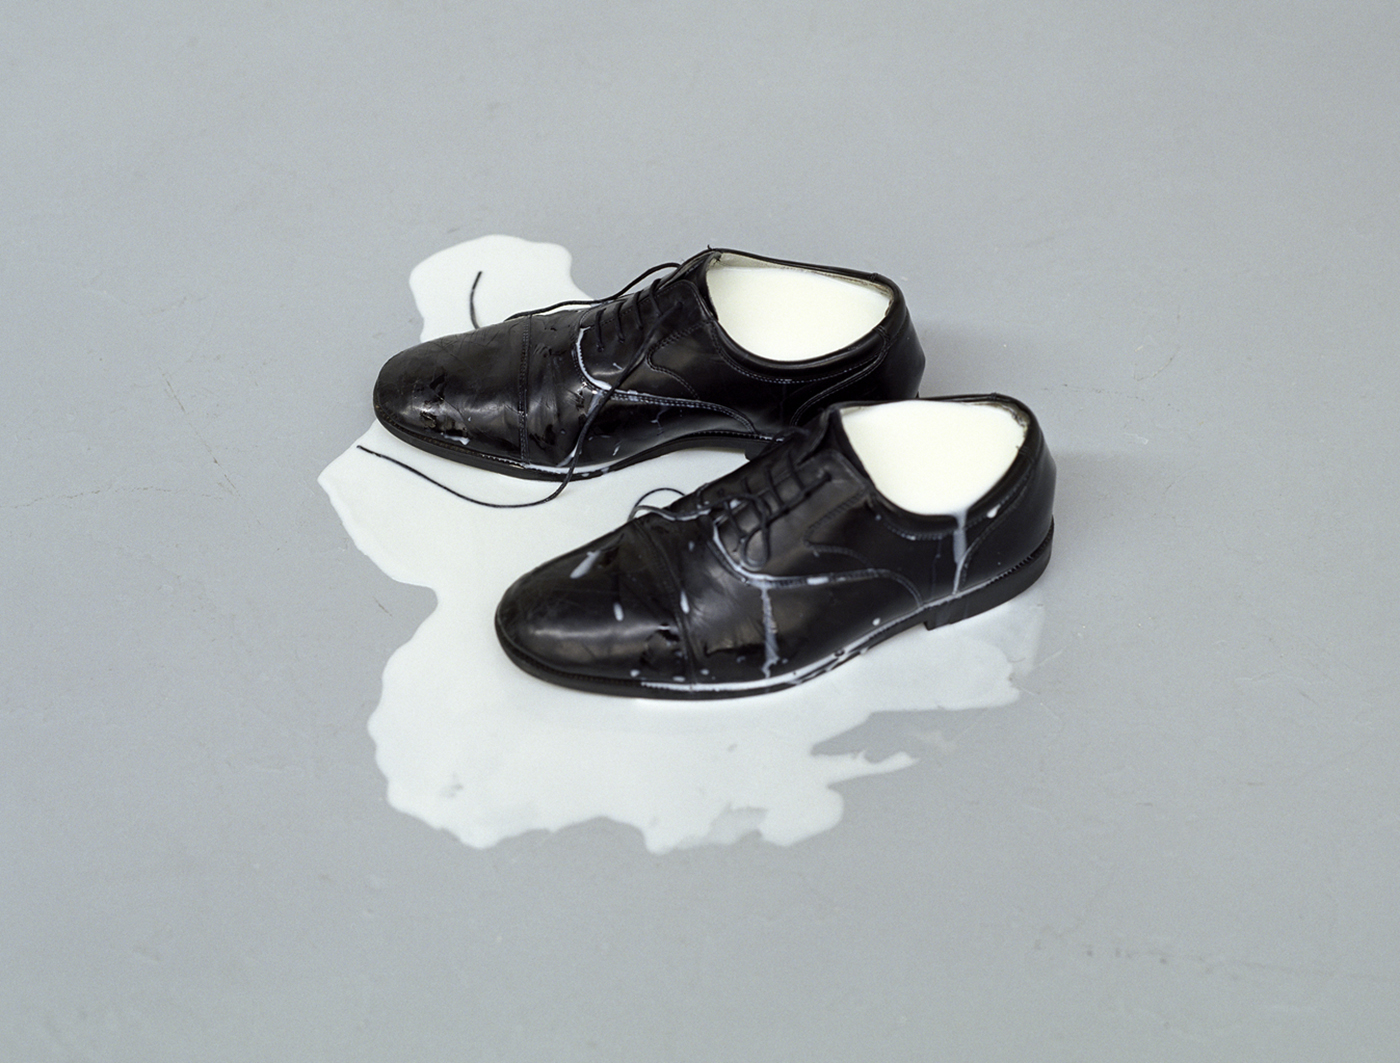 Patrick Tosani - Les chaussures de lait V, 2002